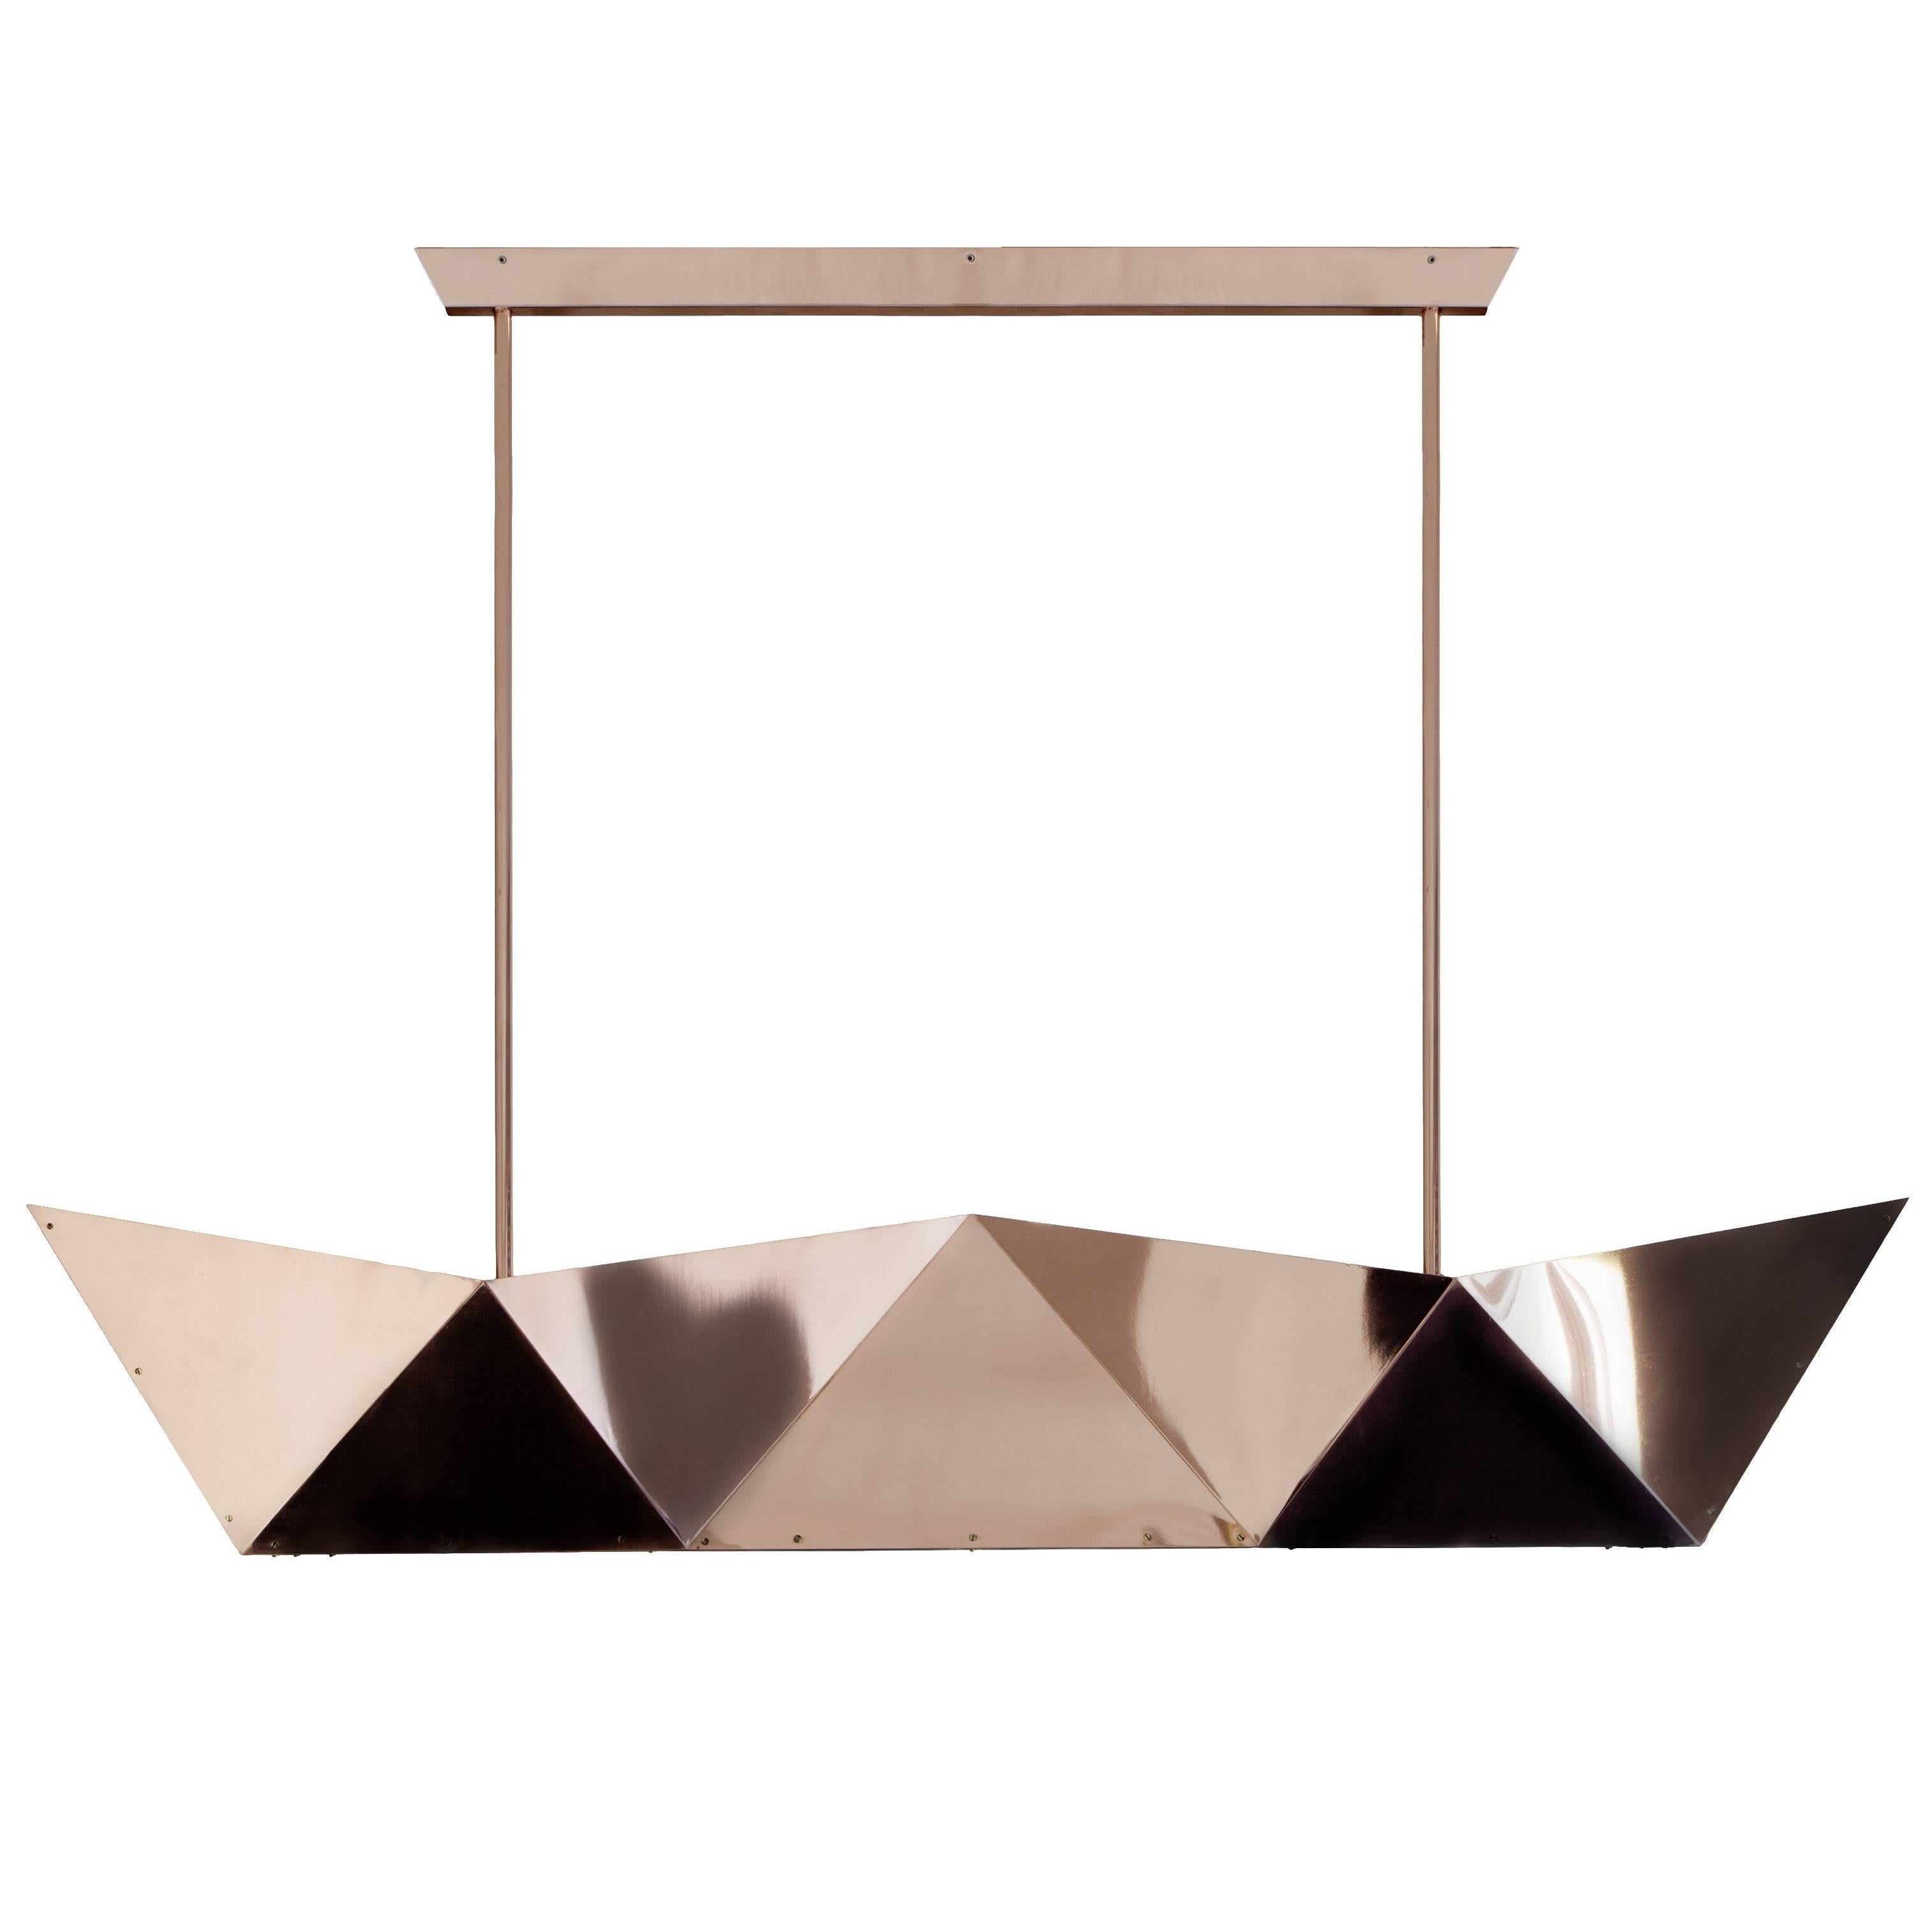 Ceiling lamp "Deriva" in Copper, Alessandro Mendini for Fragile Edizioni, 2015